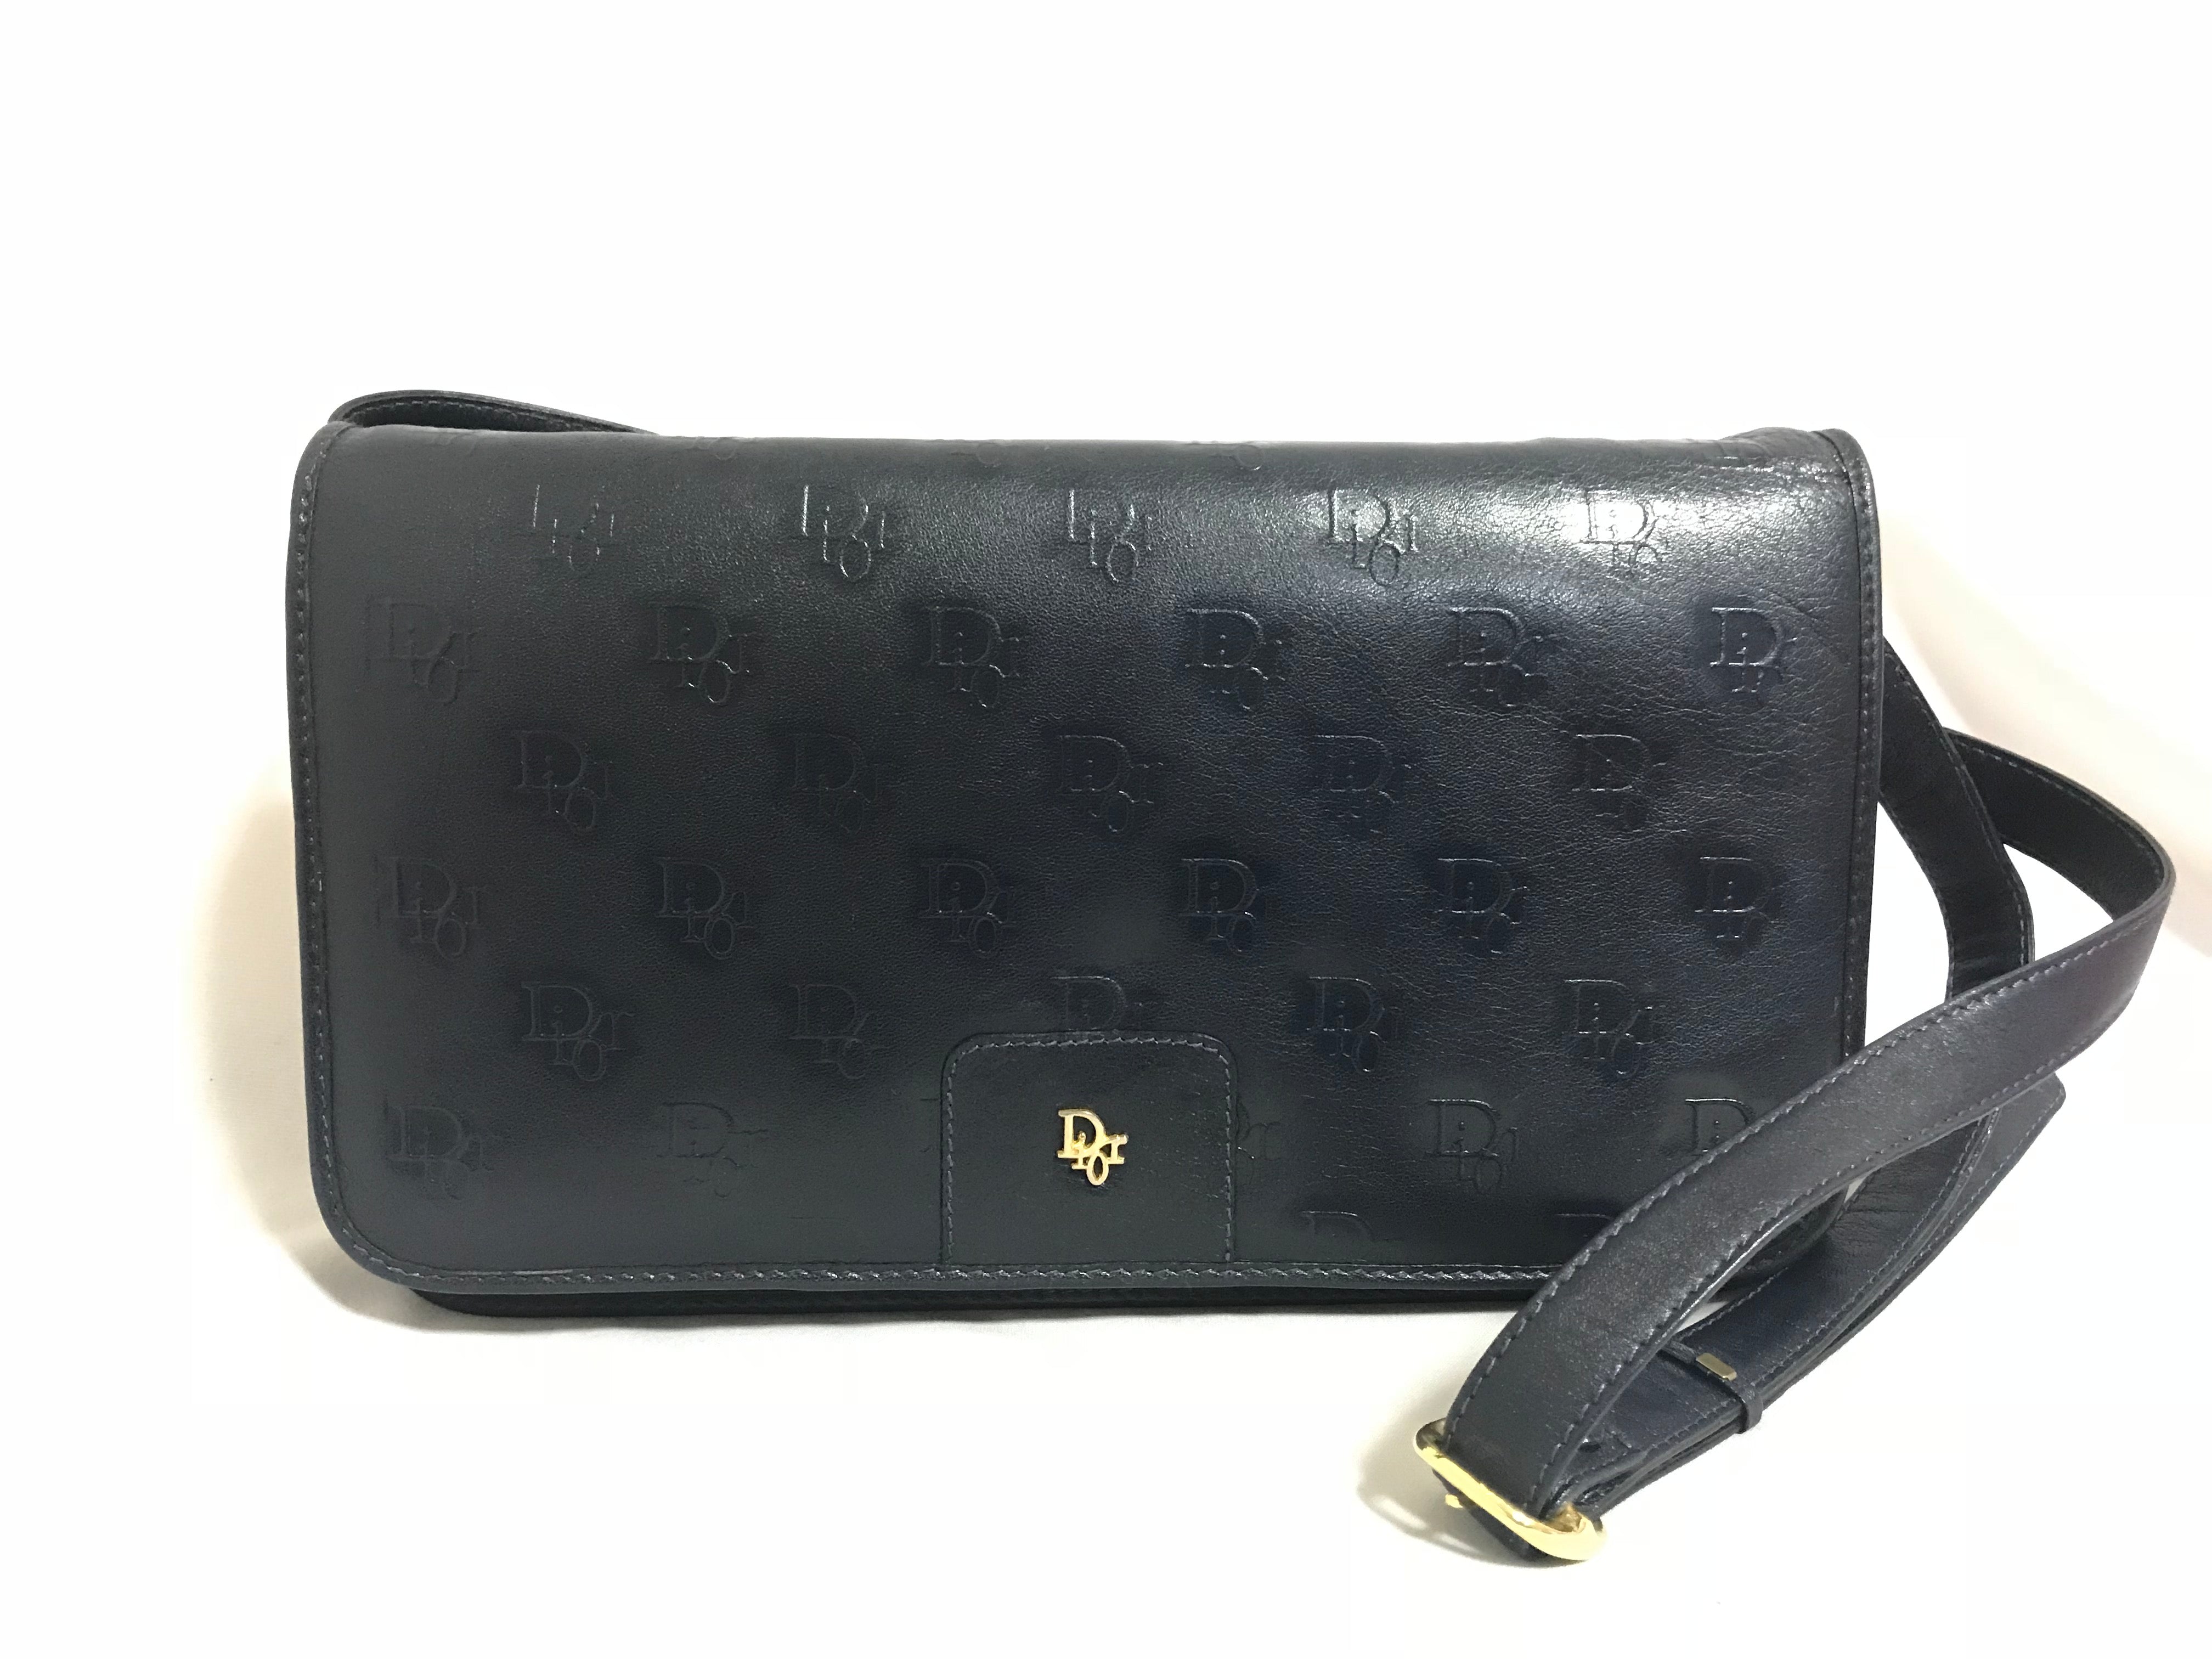 MINT. Vintage Christian Dior navy leather clutch purse, shoulder bag with golden Dior logo motif.